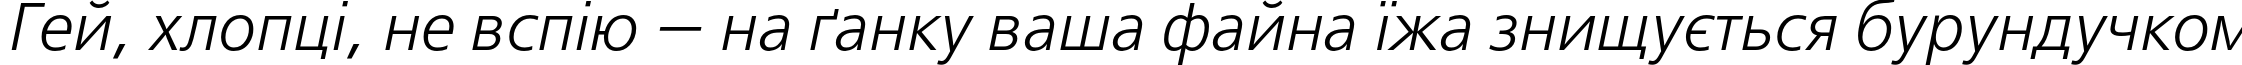 Пример написания шрифтом FreeSetC Italic текста на украинском